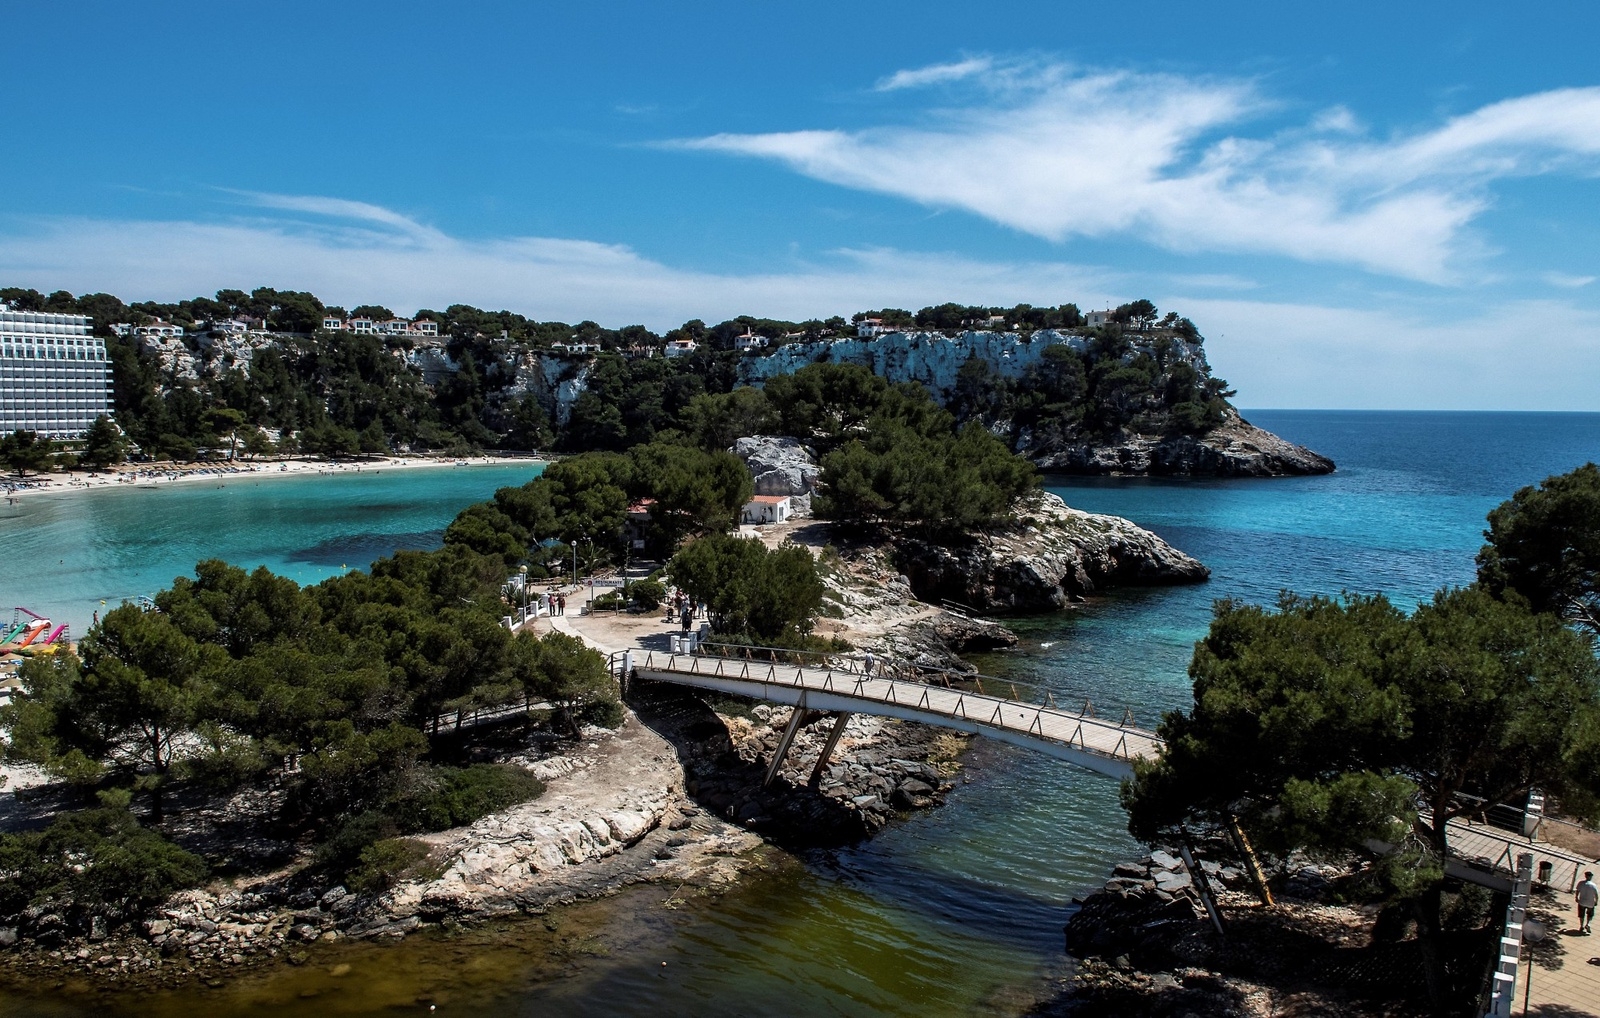 Cala Galdana på södra delen av Menorca är en populär semesterort och en bra utgångspunkt för vandringar, fågelskådning och kajakpaddling.
Foto: Jörgen Ulvsgärd